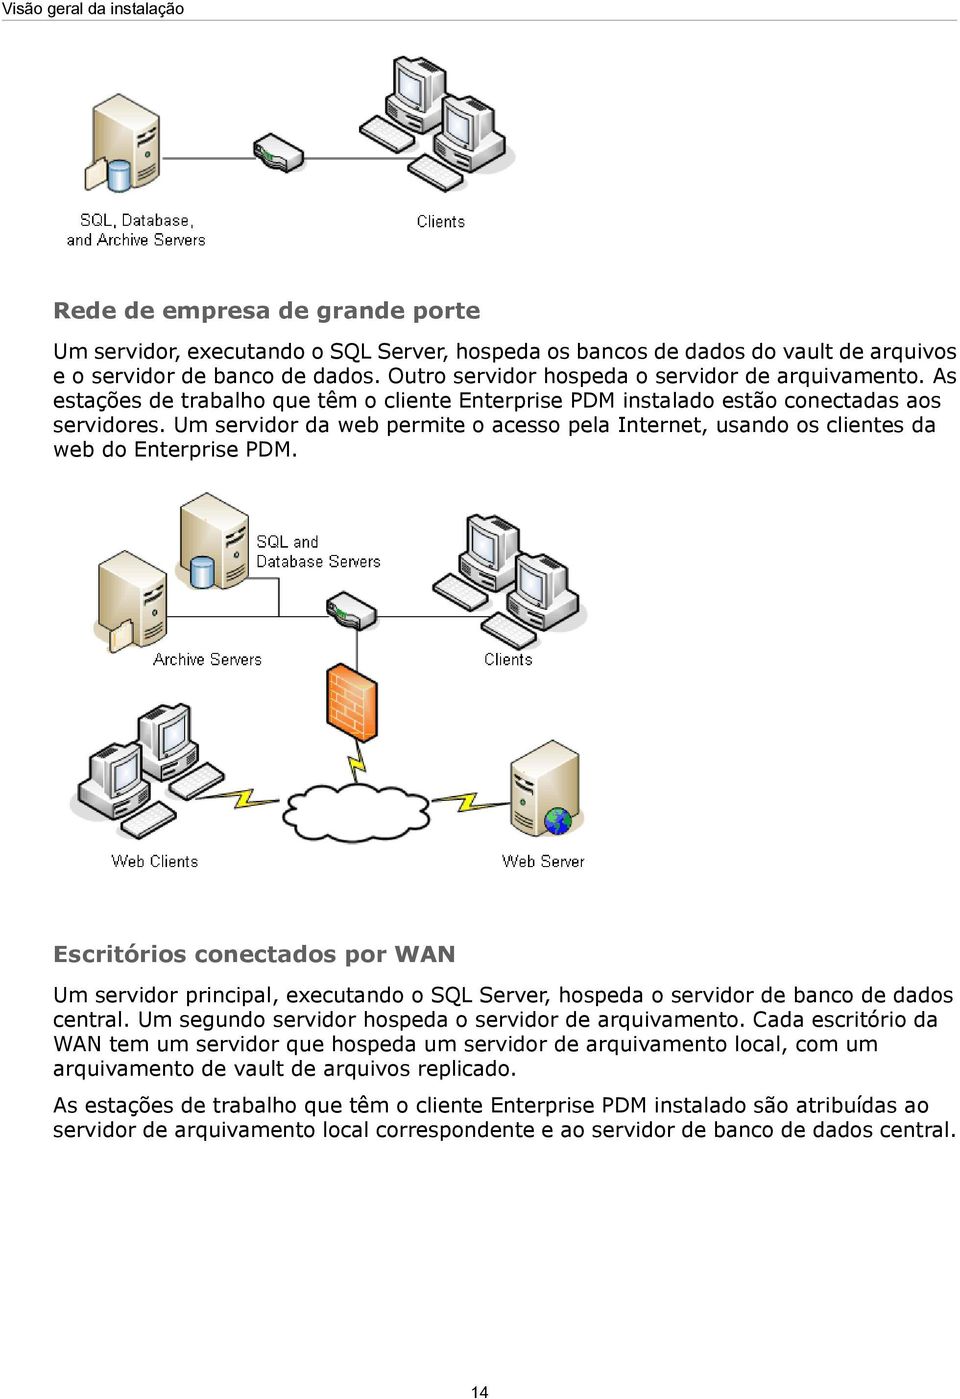 Um servidor da web permite o acesso pela Internet, usando os clientes da web do Enterprise PDM.